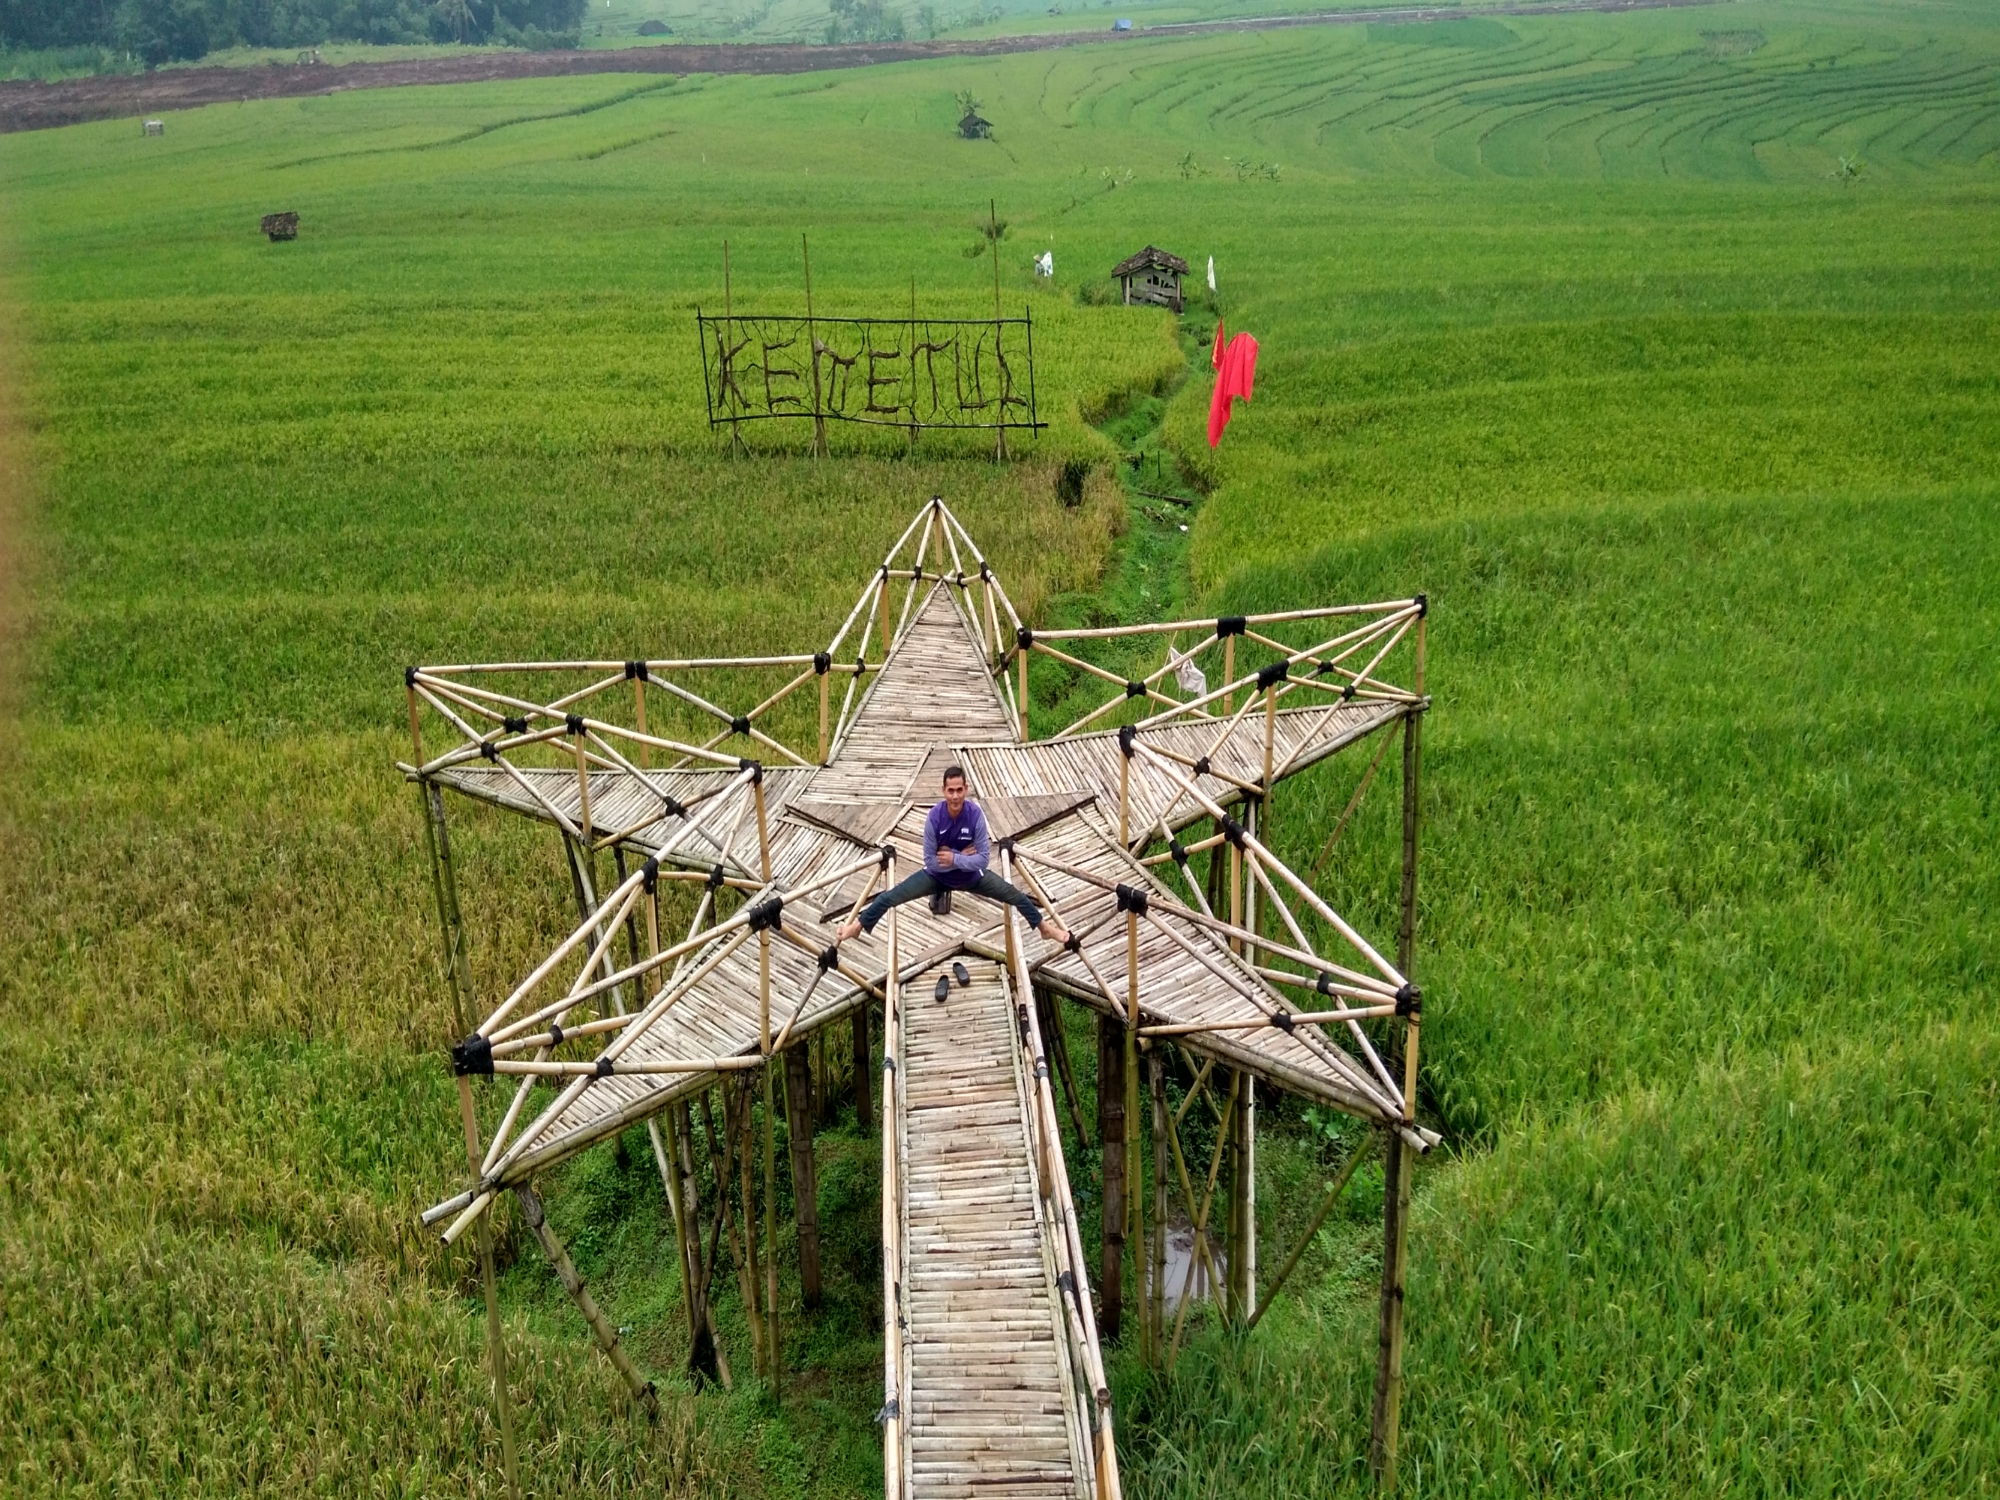 Seorang pria berfoto di atas jembatan bambu berbentuk bintang di Desa Wisata Kemetul.